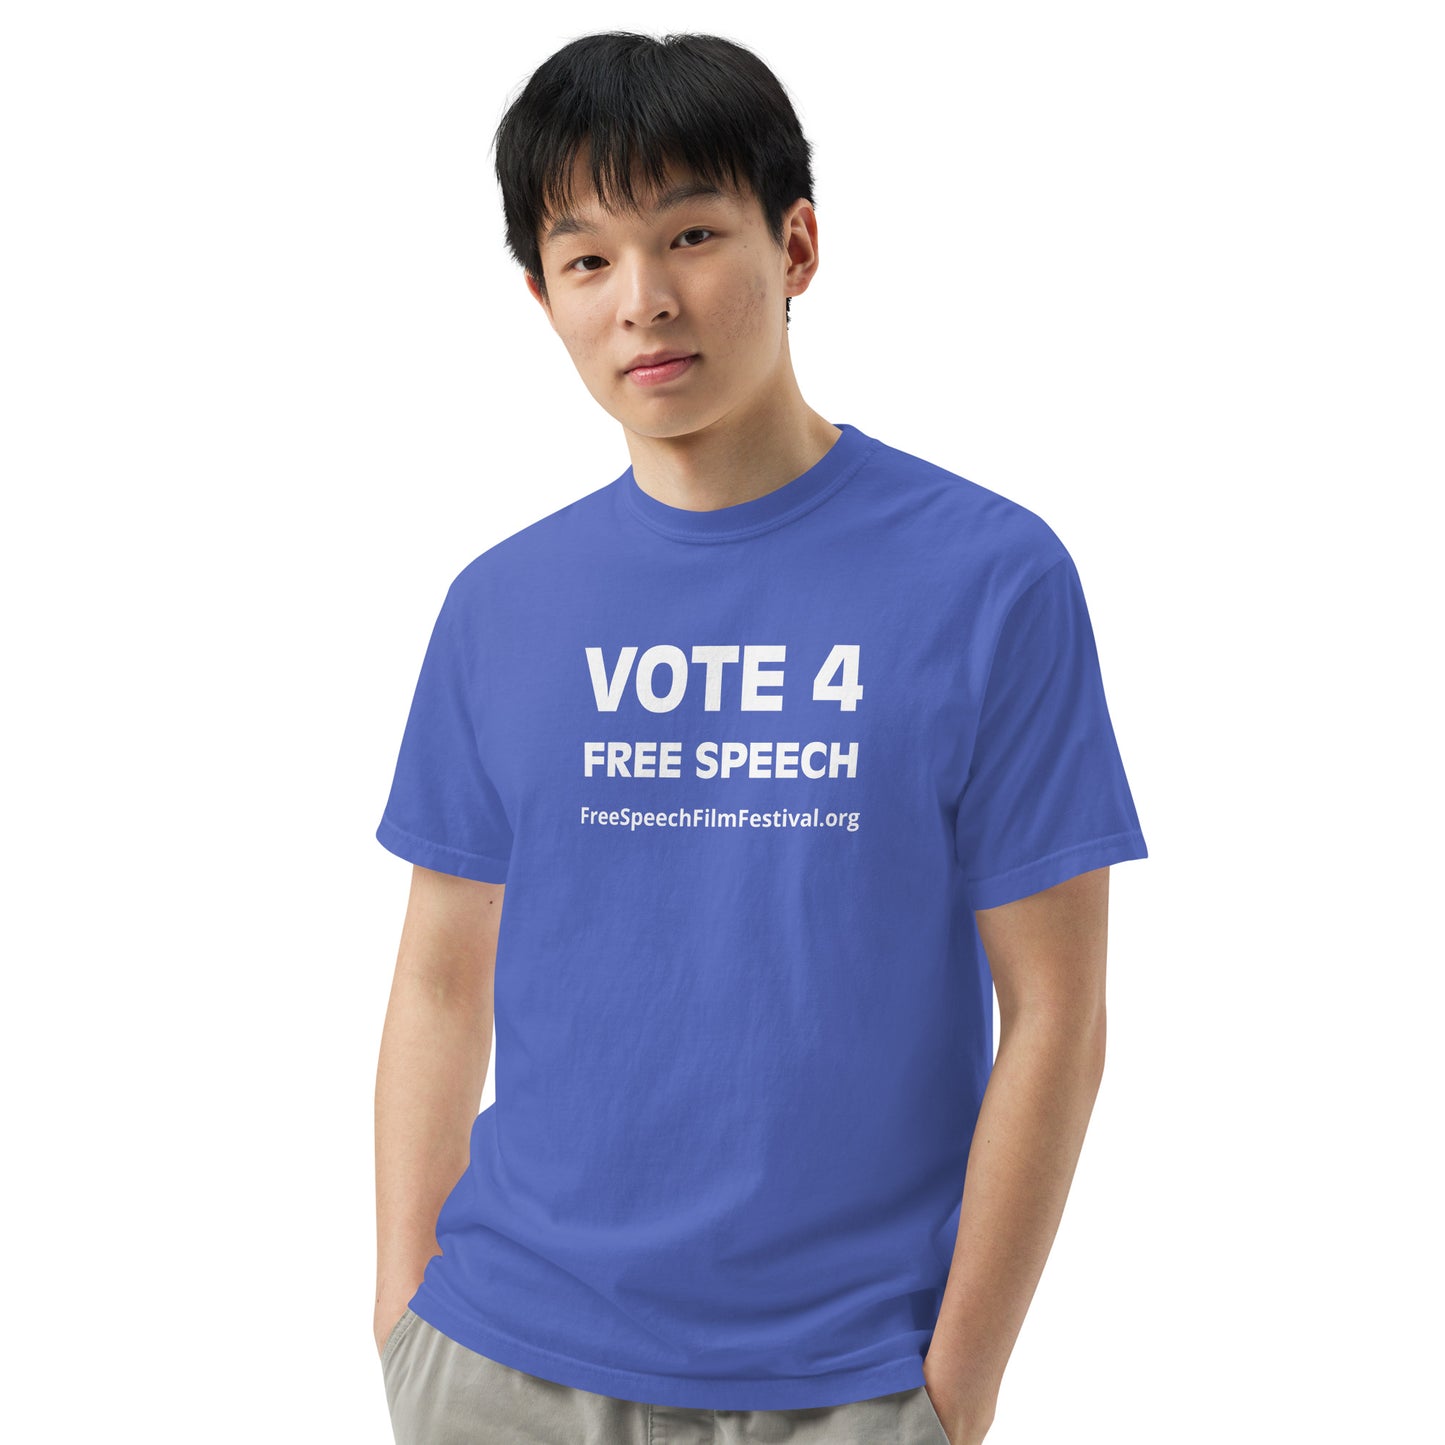 VOTE 4 FREE SPEECH T-SHIRT